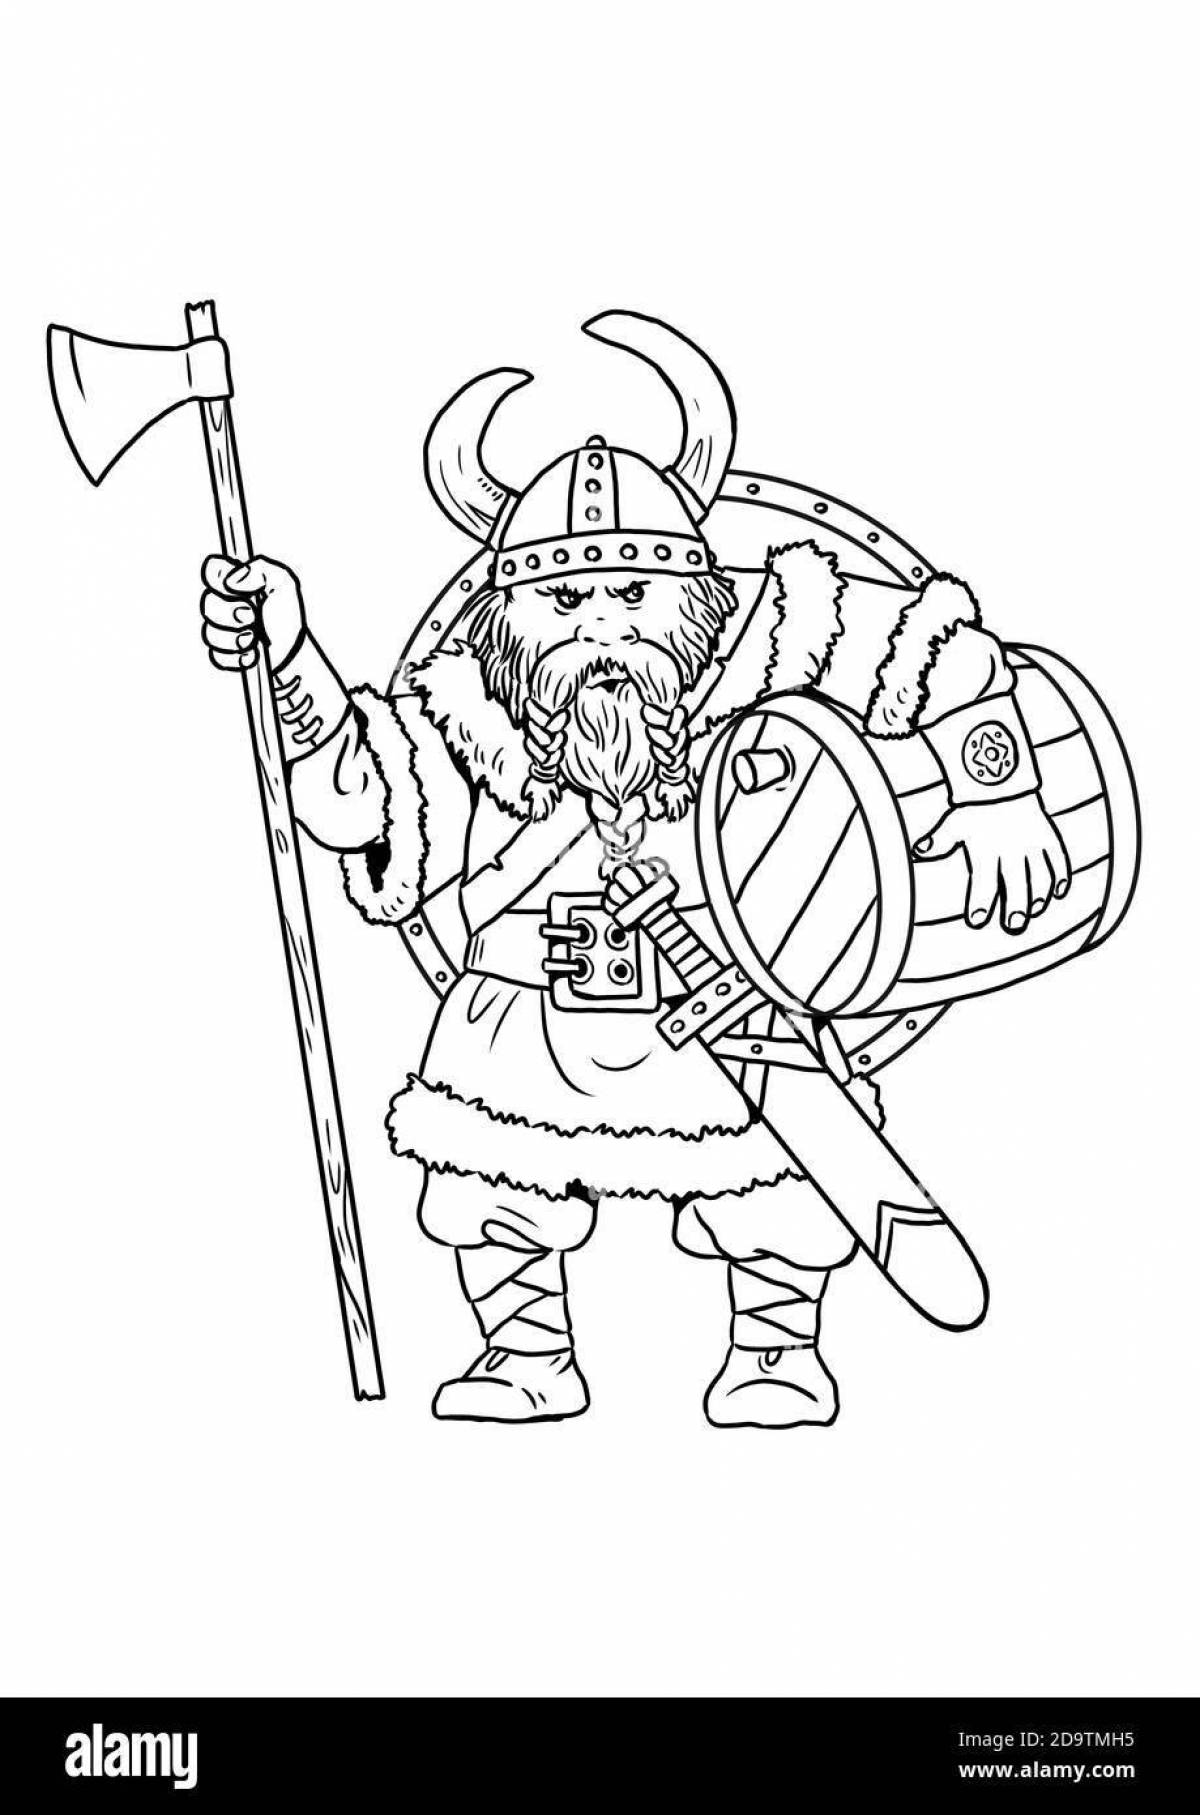 Раскраска доминантные лица викингов